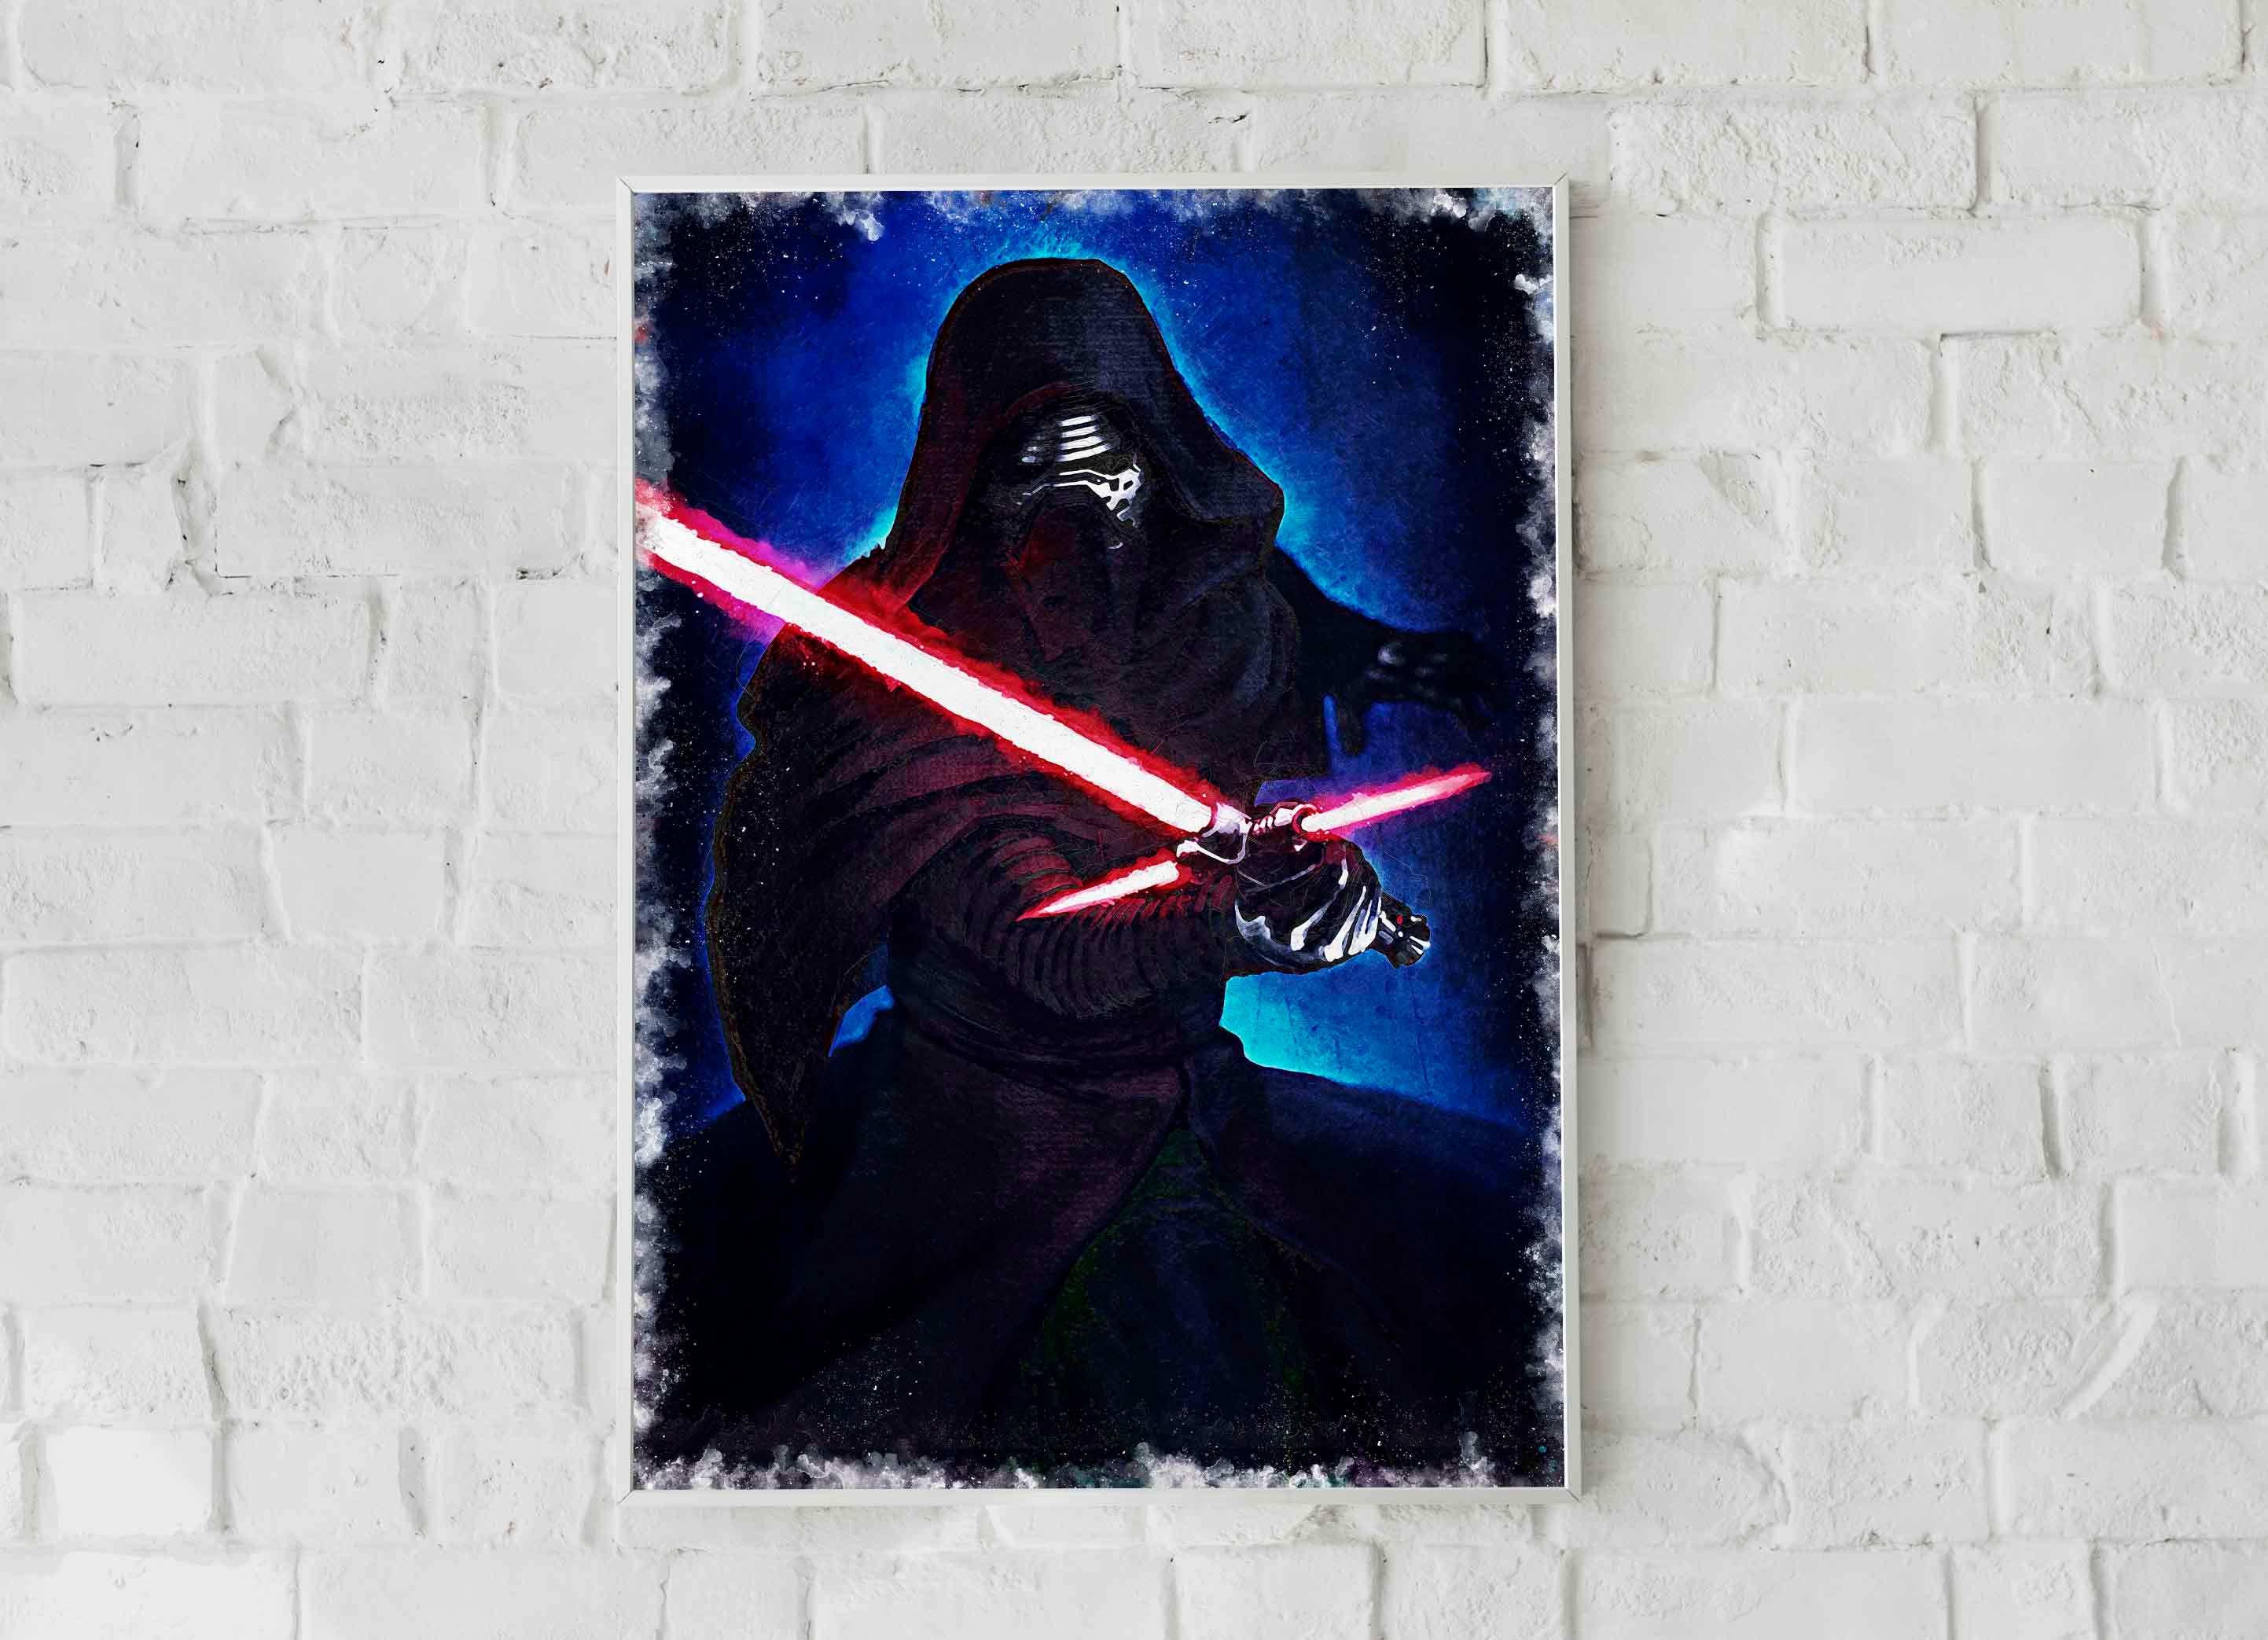 KYLO REN POSTER - Star Wars Poster - Canvas Poster - Star Wars Print - Kylo Ren Print -Watercolor Art - Fan Art-Wall Art